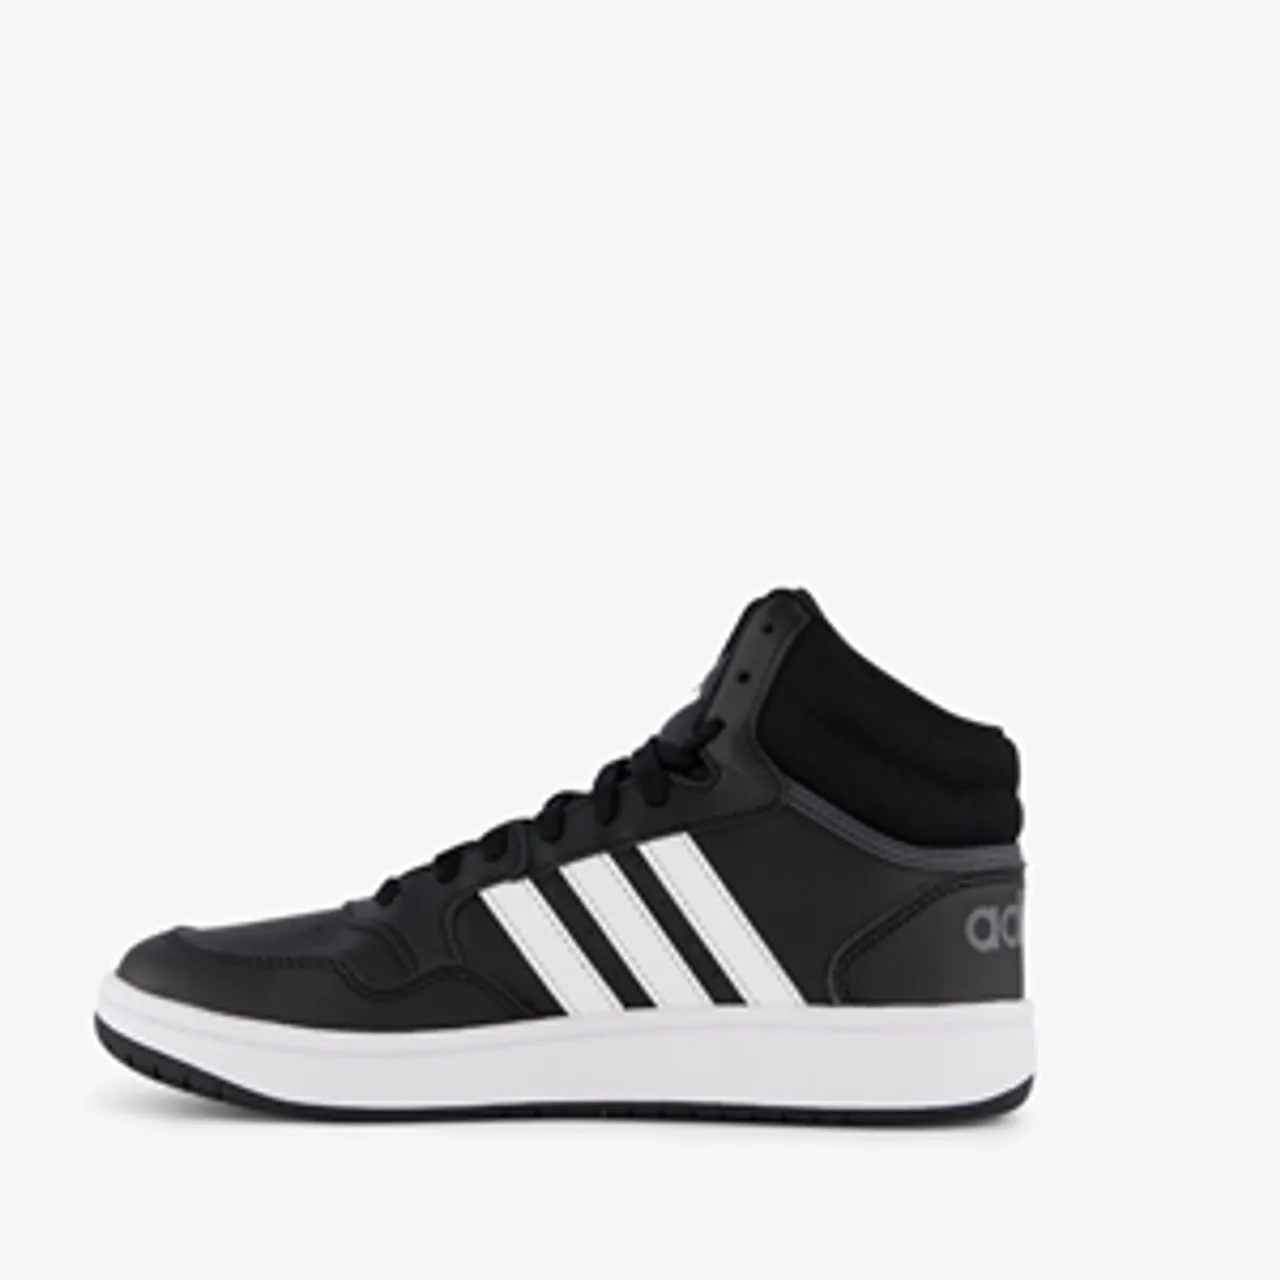 Adidas Hoops Mid 3.0 hoge kinder sneakers zwart